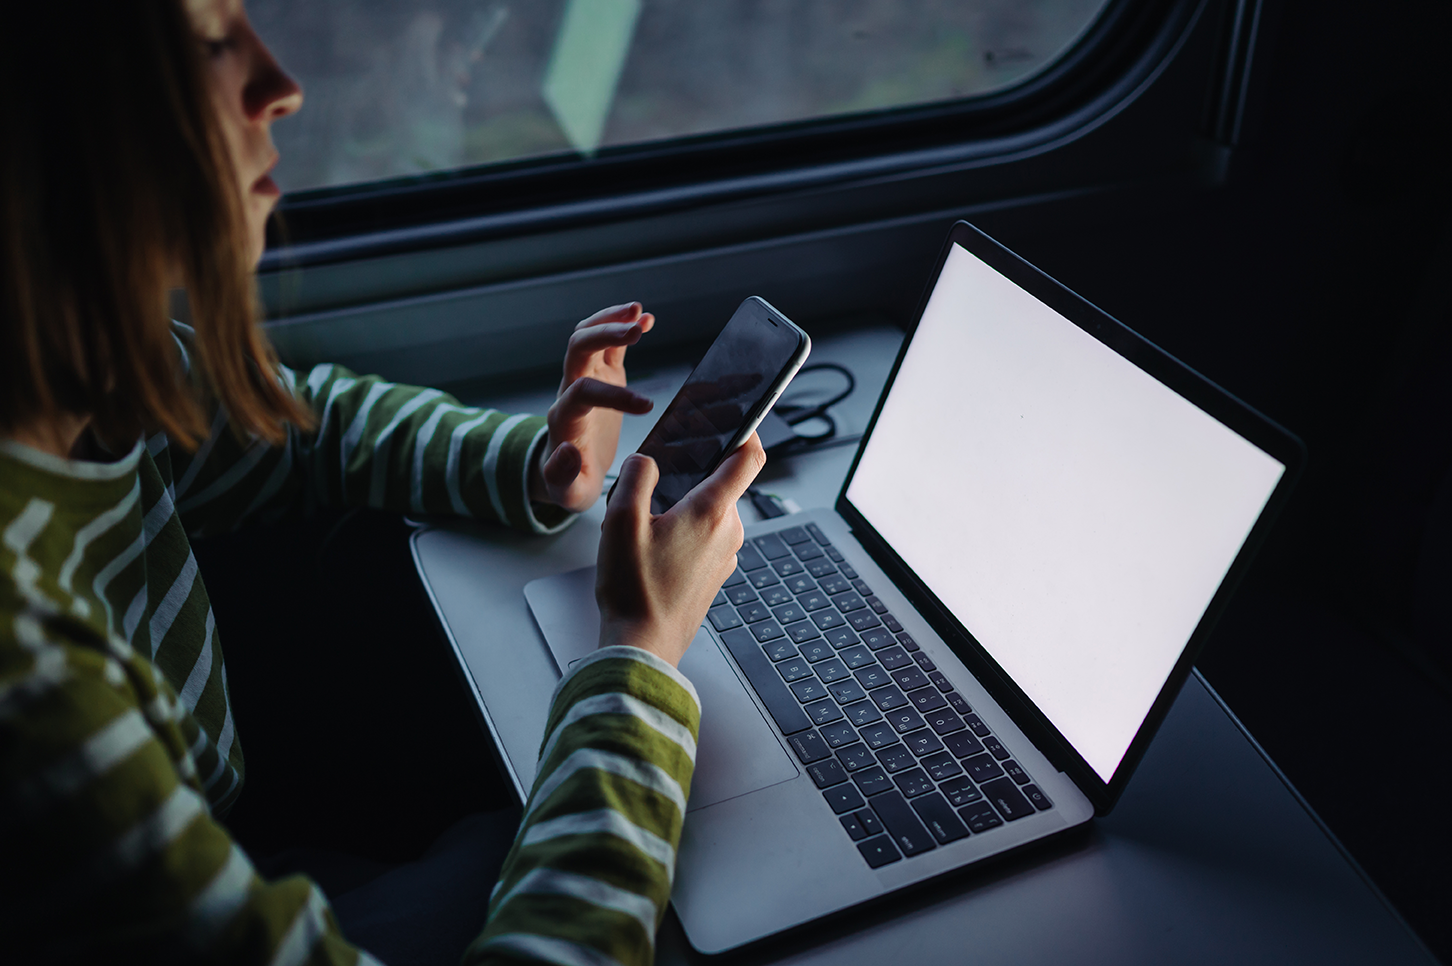 Mujer frente a laptop y celular, wifi gratuito de estaciones de tren británicas